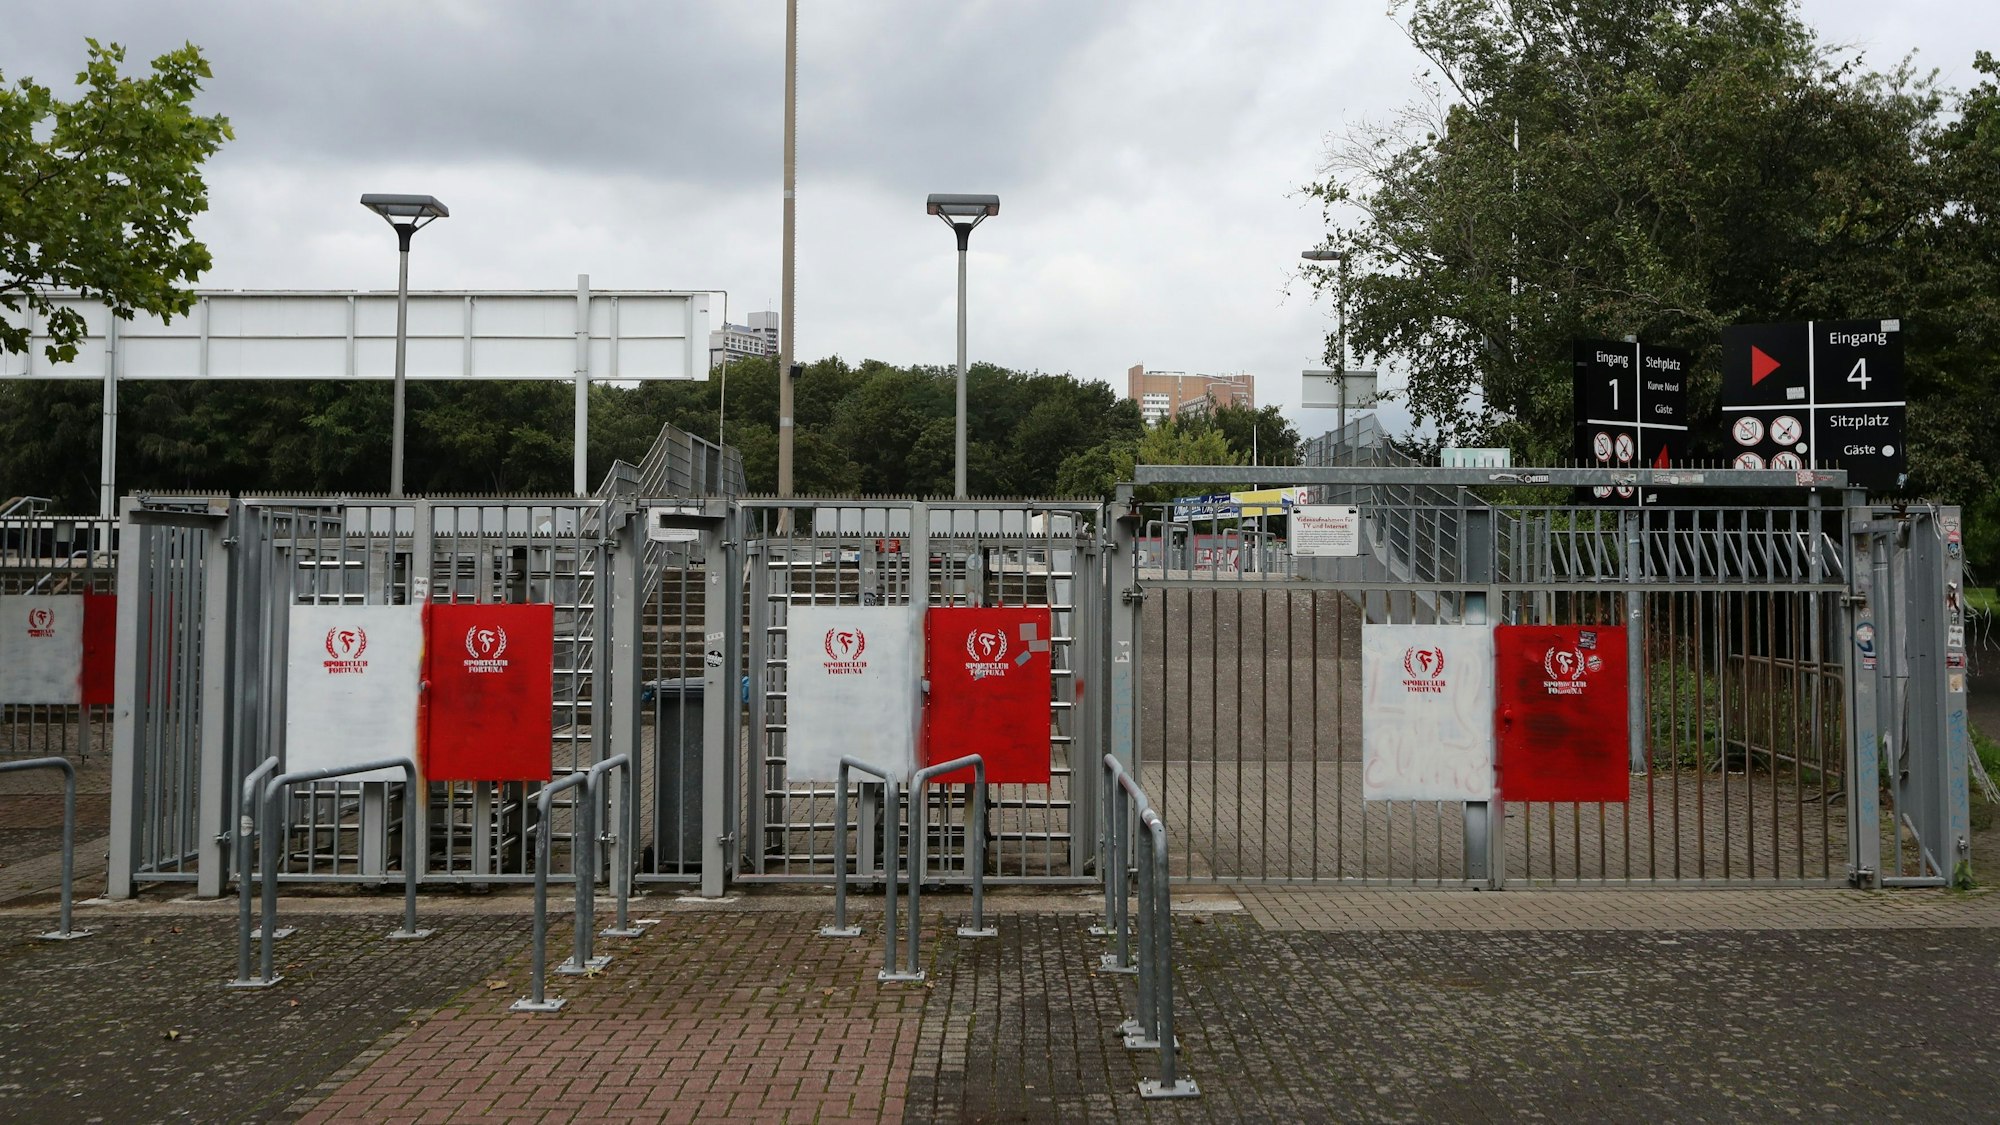 Blick auf die Eingänge zum Südstadion in Köln, im Hintergrund sind die Tribünen zu sehen.